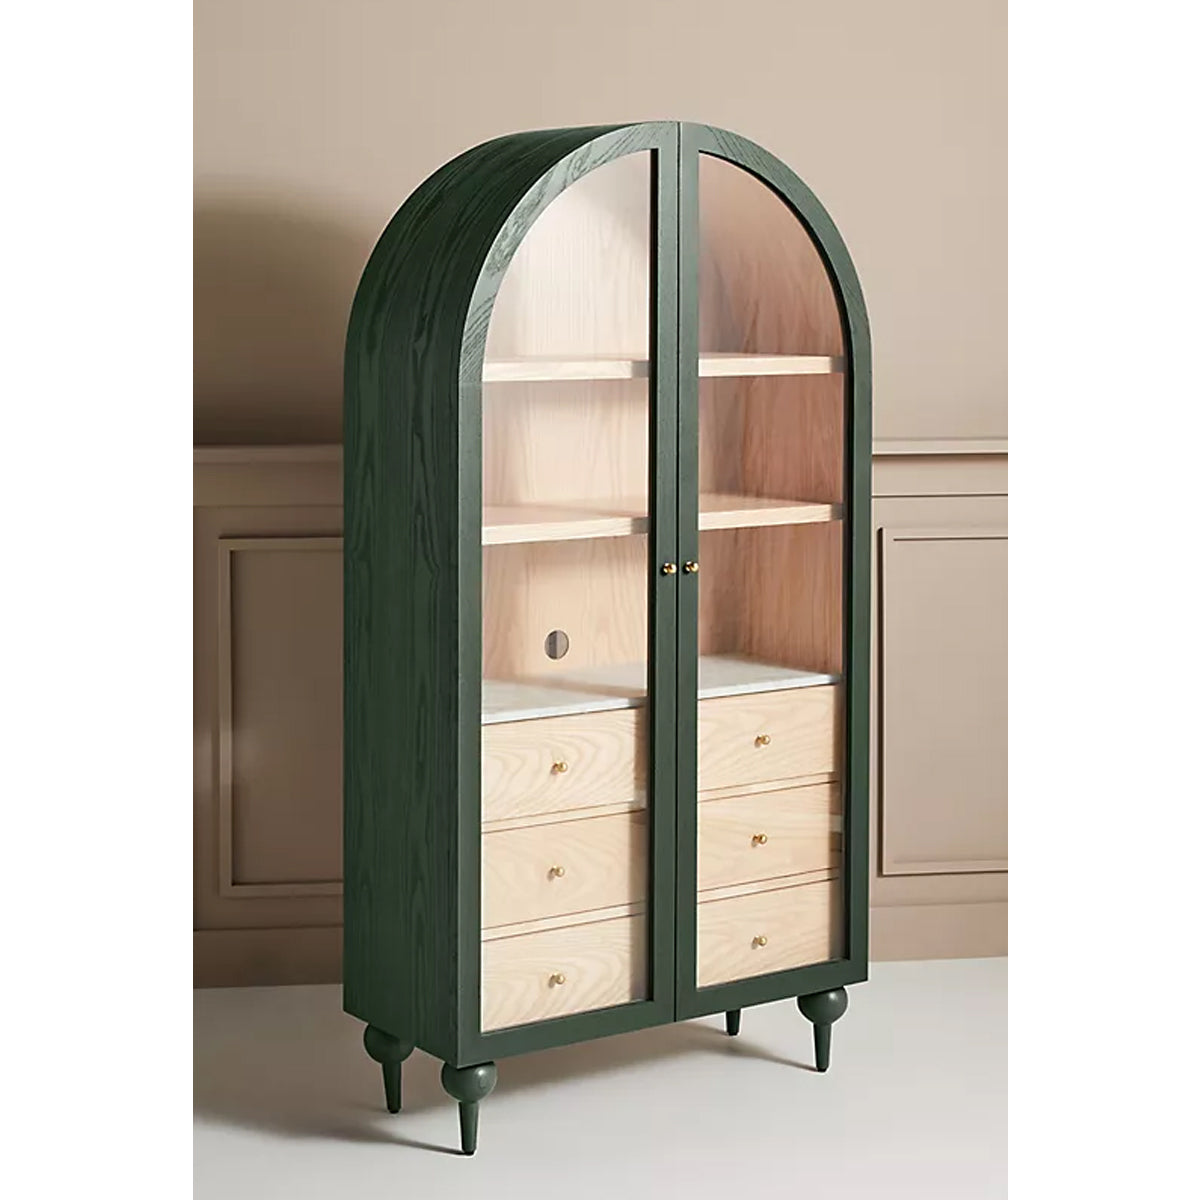 Simano Hardwood Glass Door Storage Cabinet - Dark Green